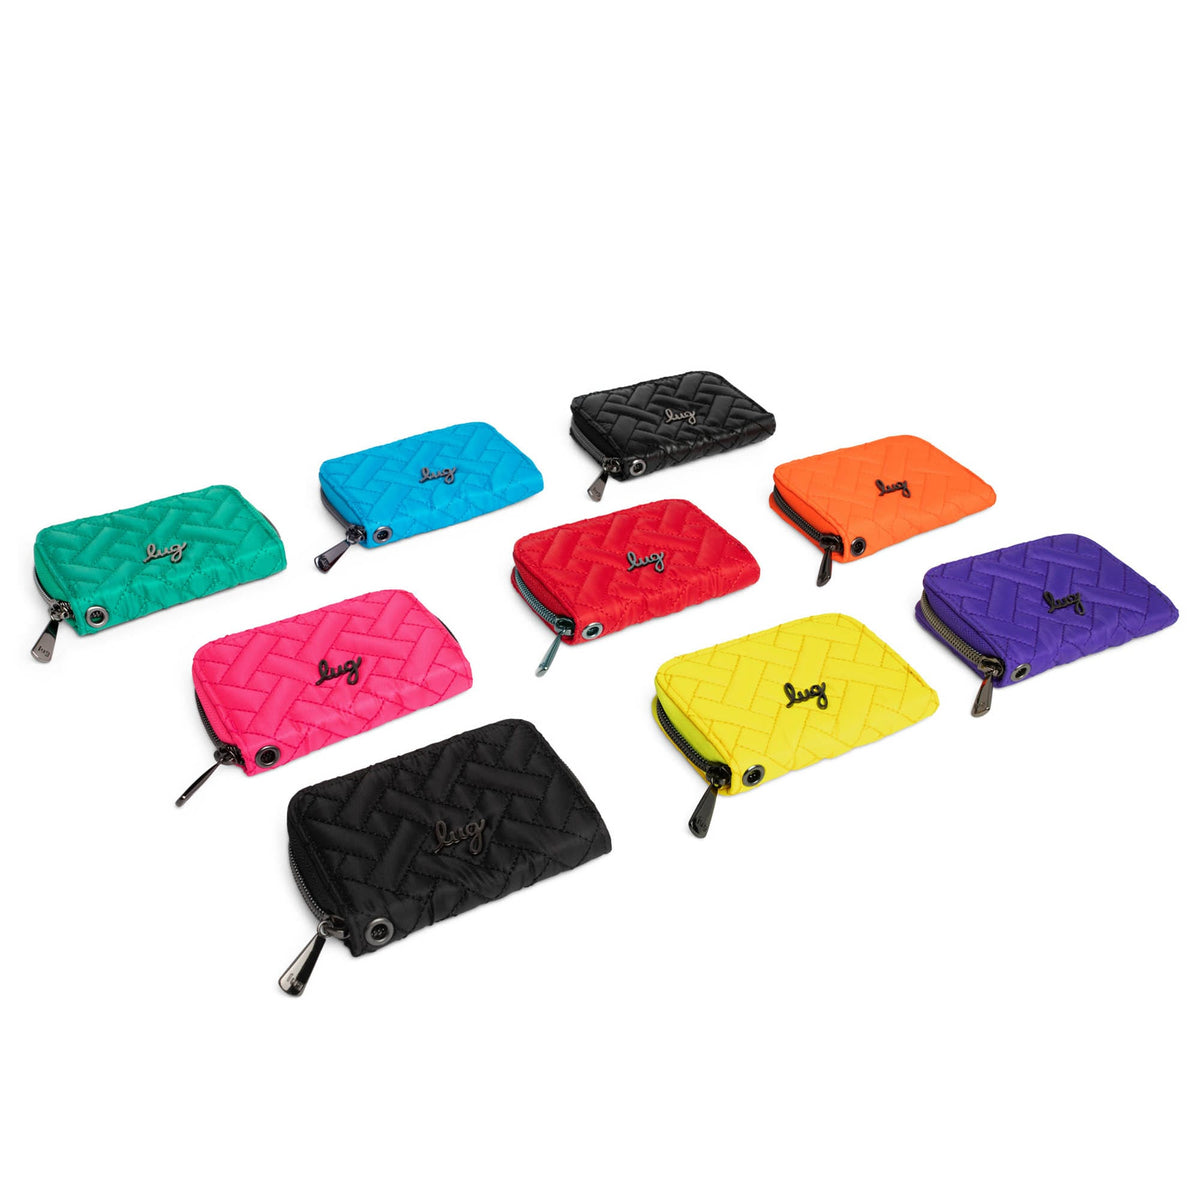 Lug - Chipper Wristlet RFID Wallet Bag - Coral